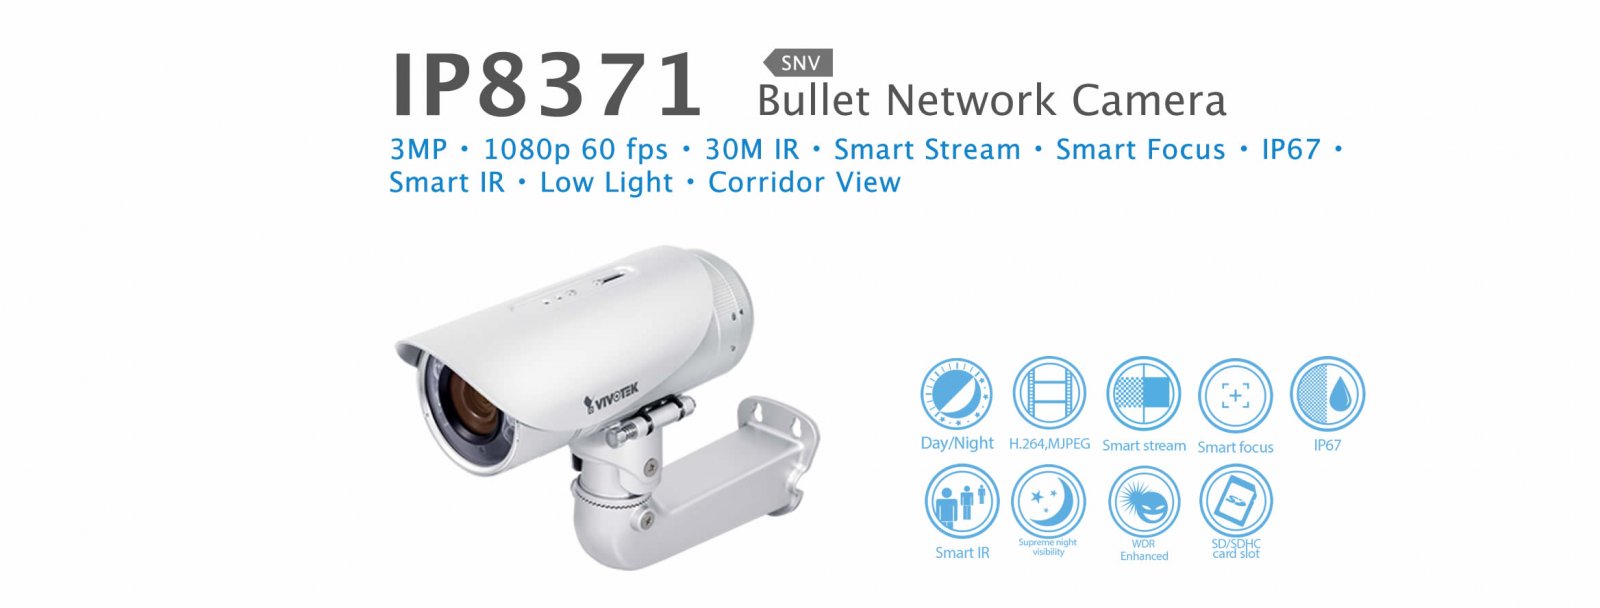 IB9371-HT. Vivotek Bullet Network Camera